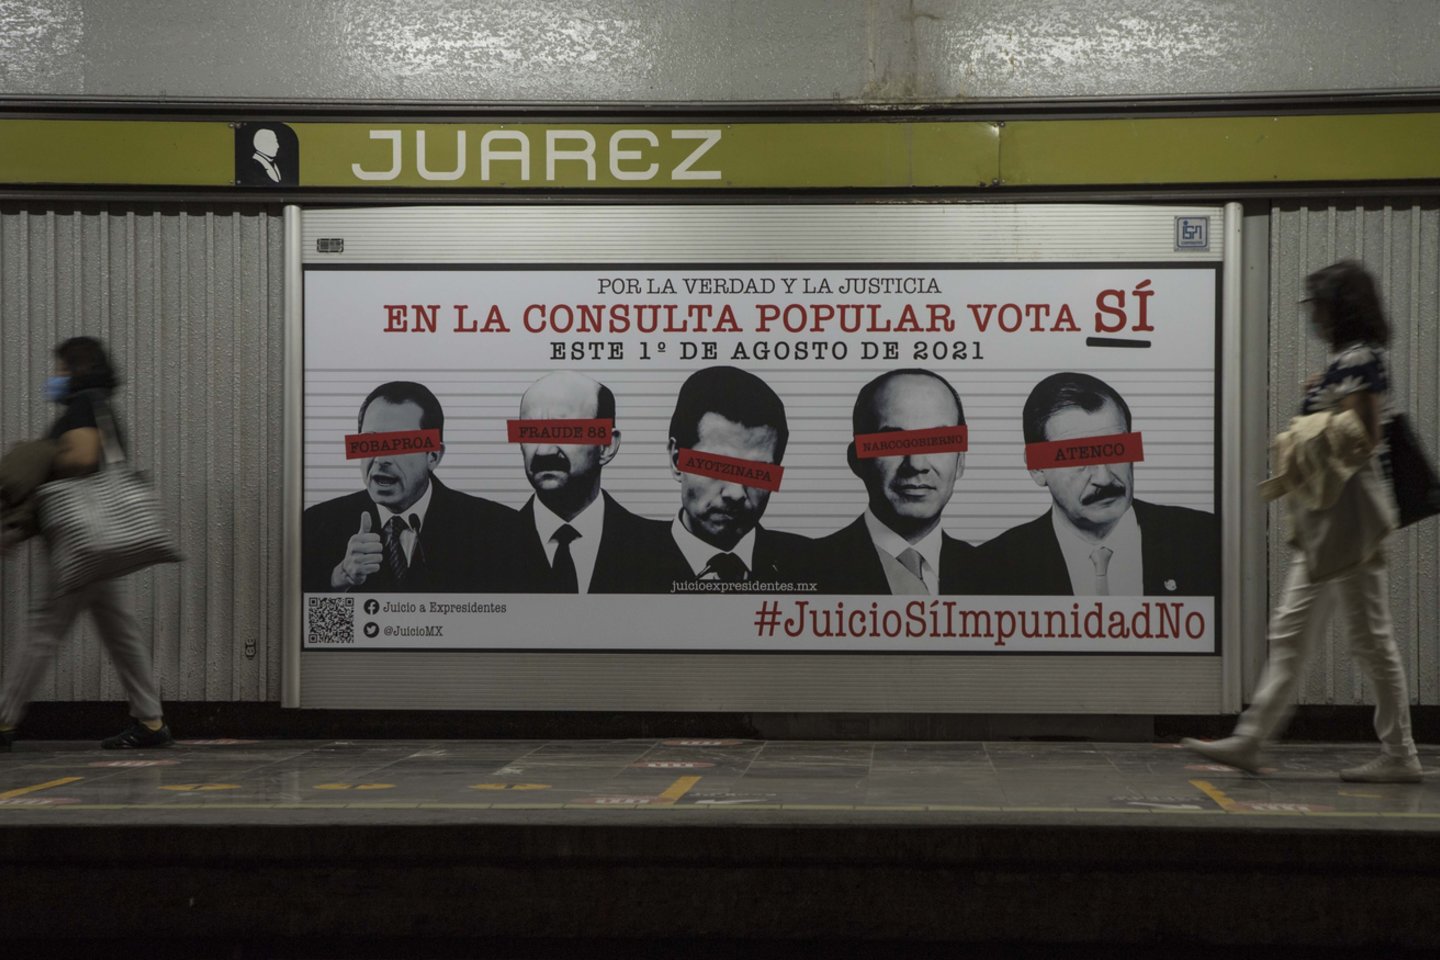  Meksikiečiai sekmadienį balsuoja prezidento remiamame nacionaliniame referendume dėl buvusių šalies lyderių patraukimo baudžiamojon atsakomybėn už korupcinius nusikaltimus.  <br> AP/Scanpix nuotr.